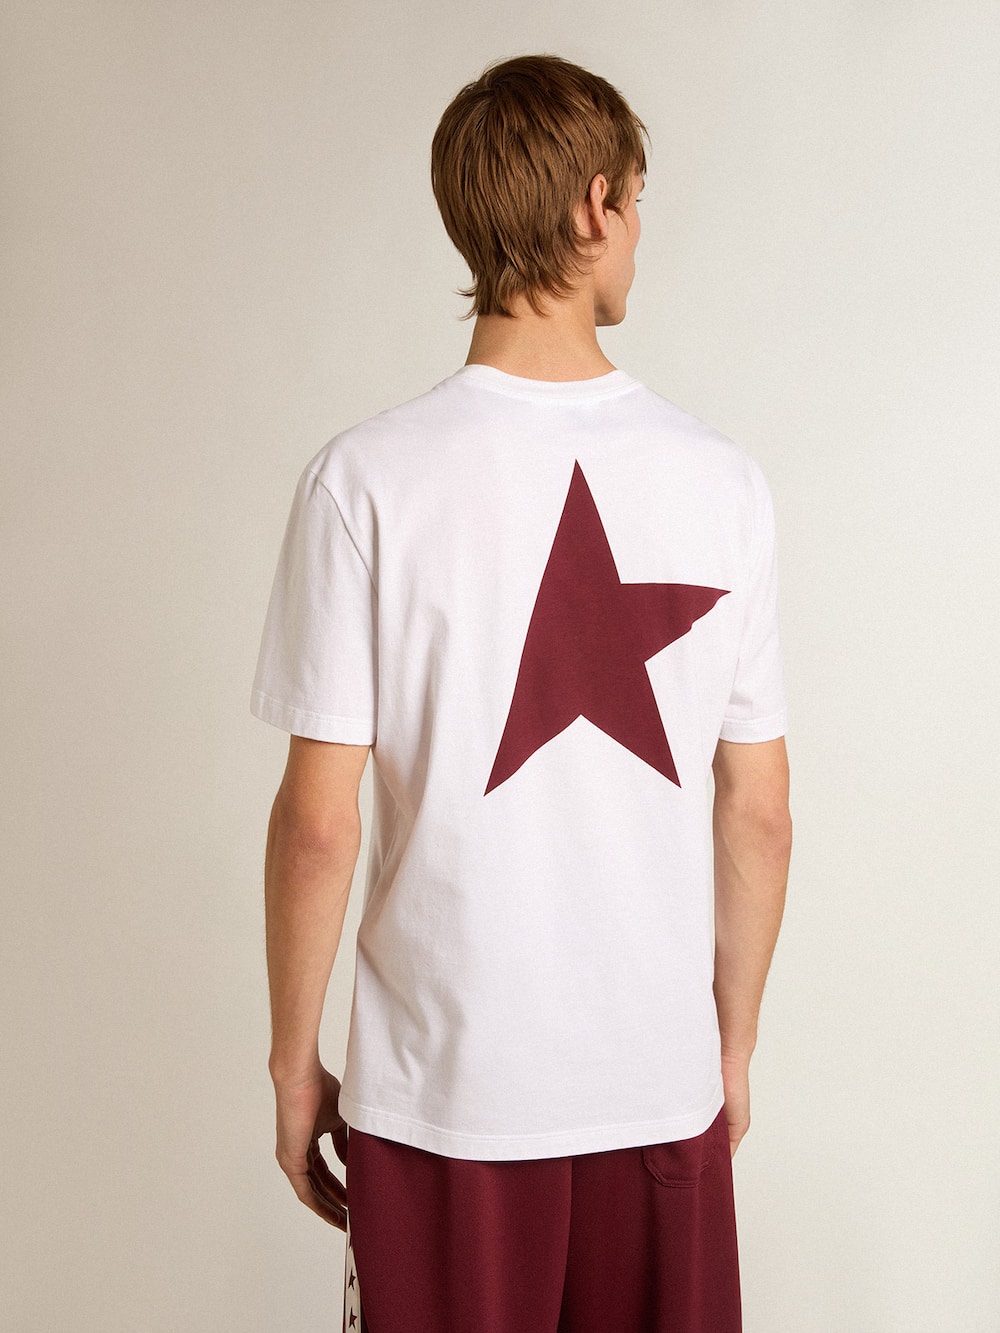 Golden Goose - T-shirt bianca da uomo con logo e stella bordeaux a contrasto in 